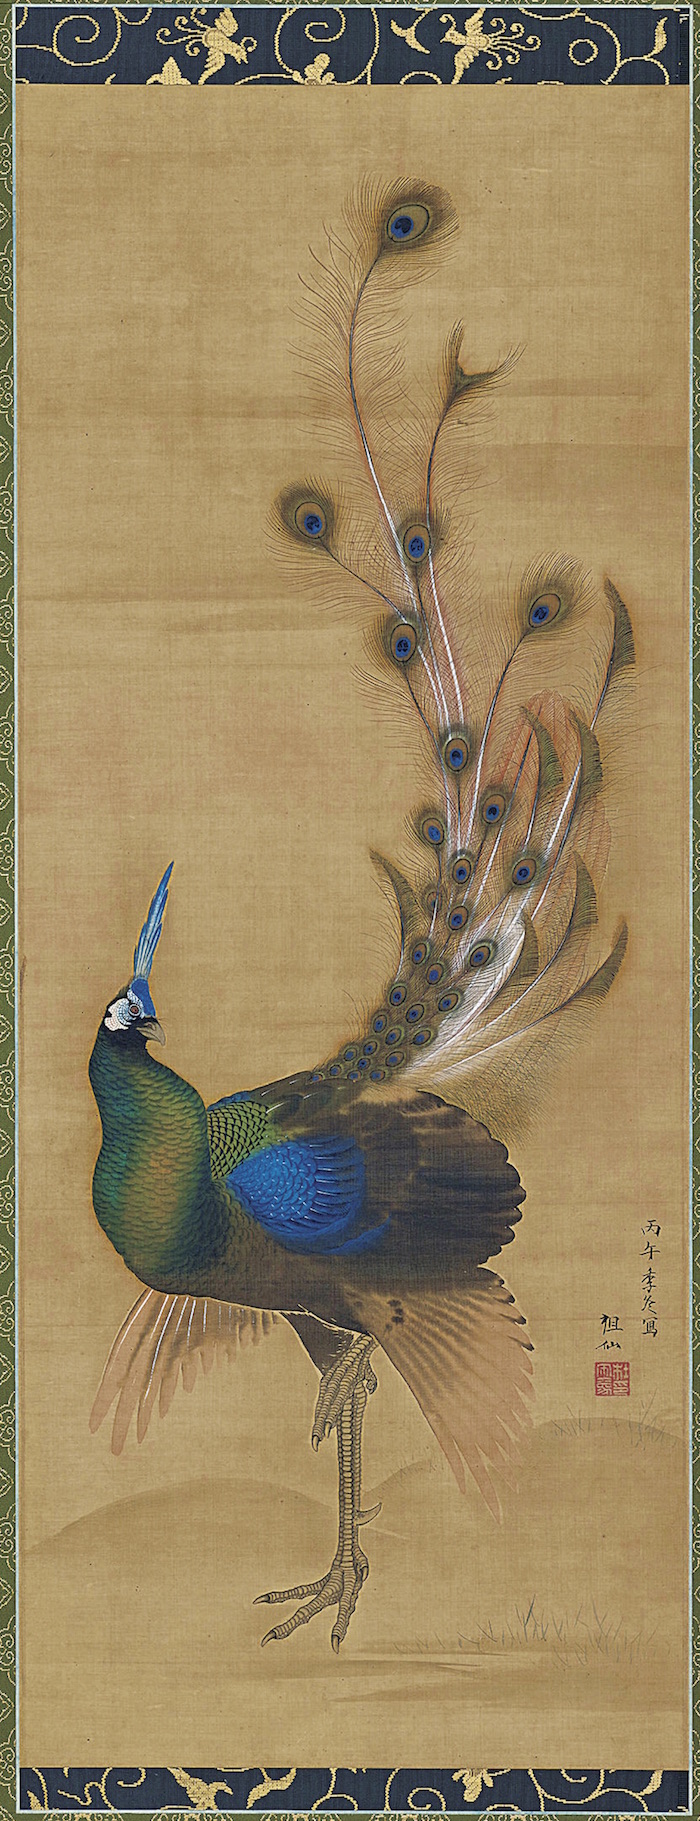 江戸時代絵画の画題でもあった神秘の鳥 孔雀 から生まれたハイジュエリー 和樂web 日本文化の入り口マガジン